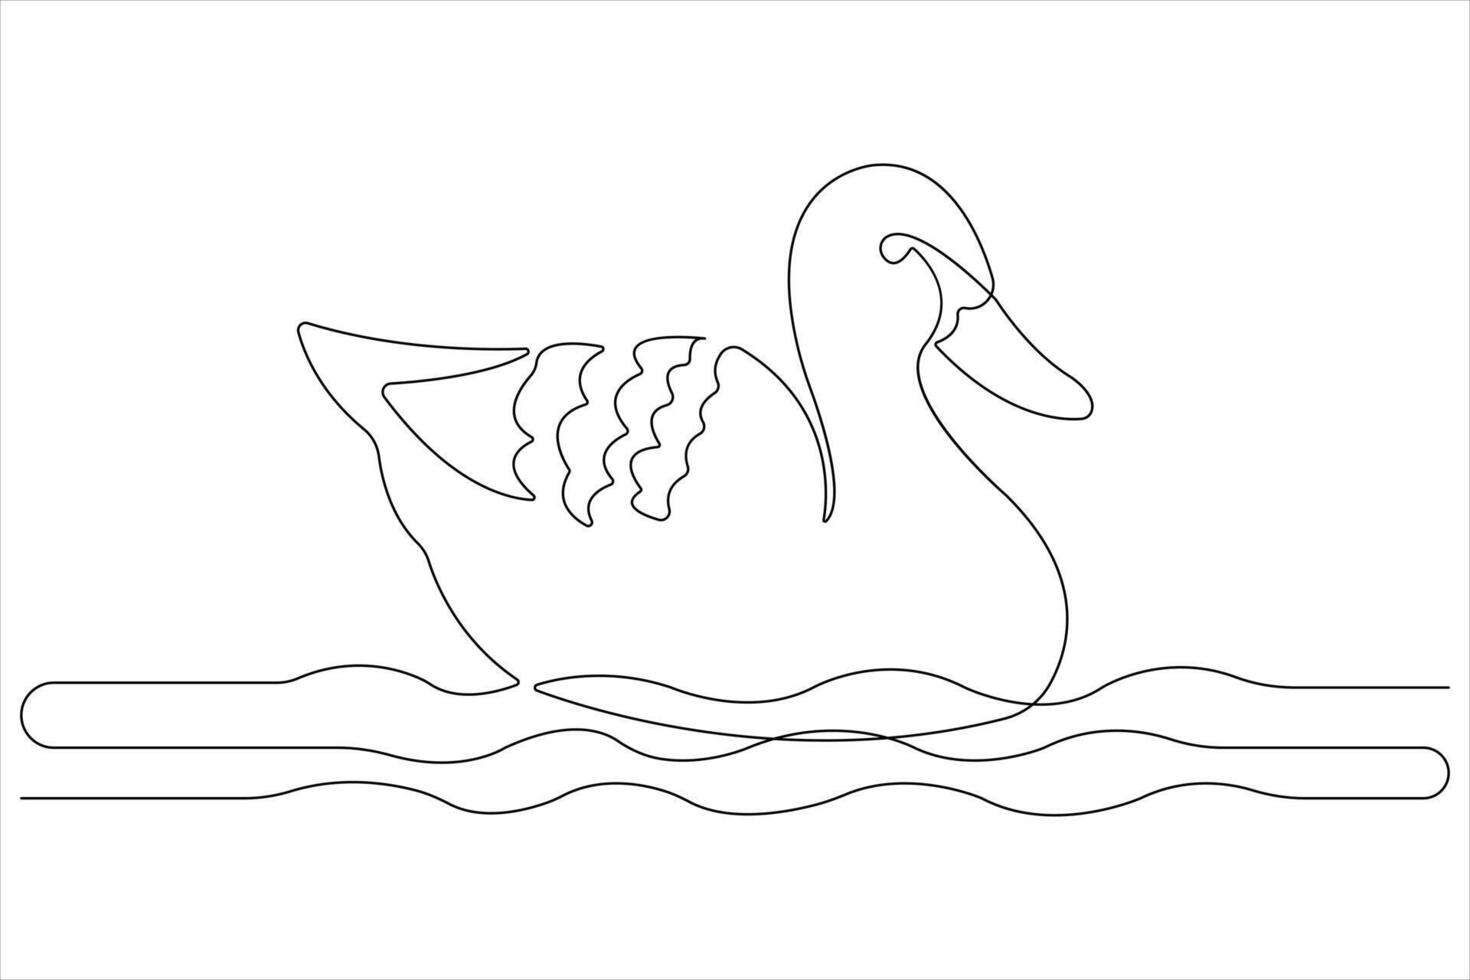 doorlopend single lijn kunst tekening van huisdier dier eend concept schets vector illustratie